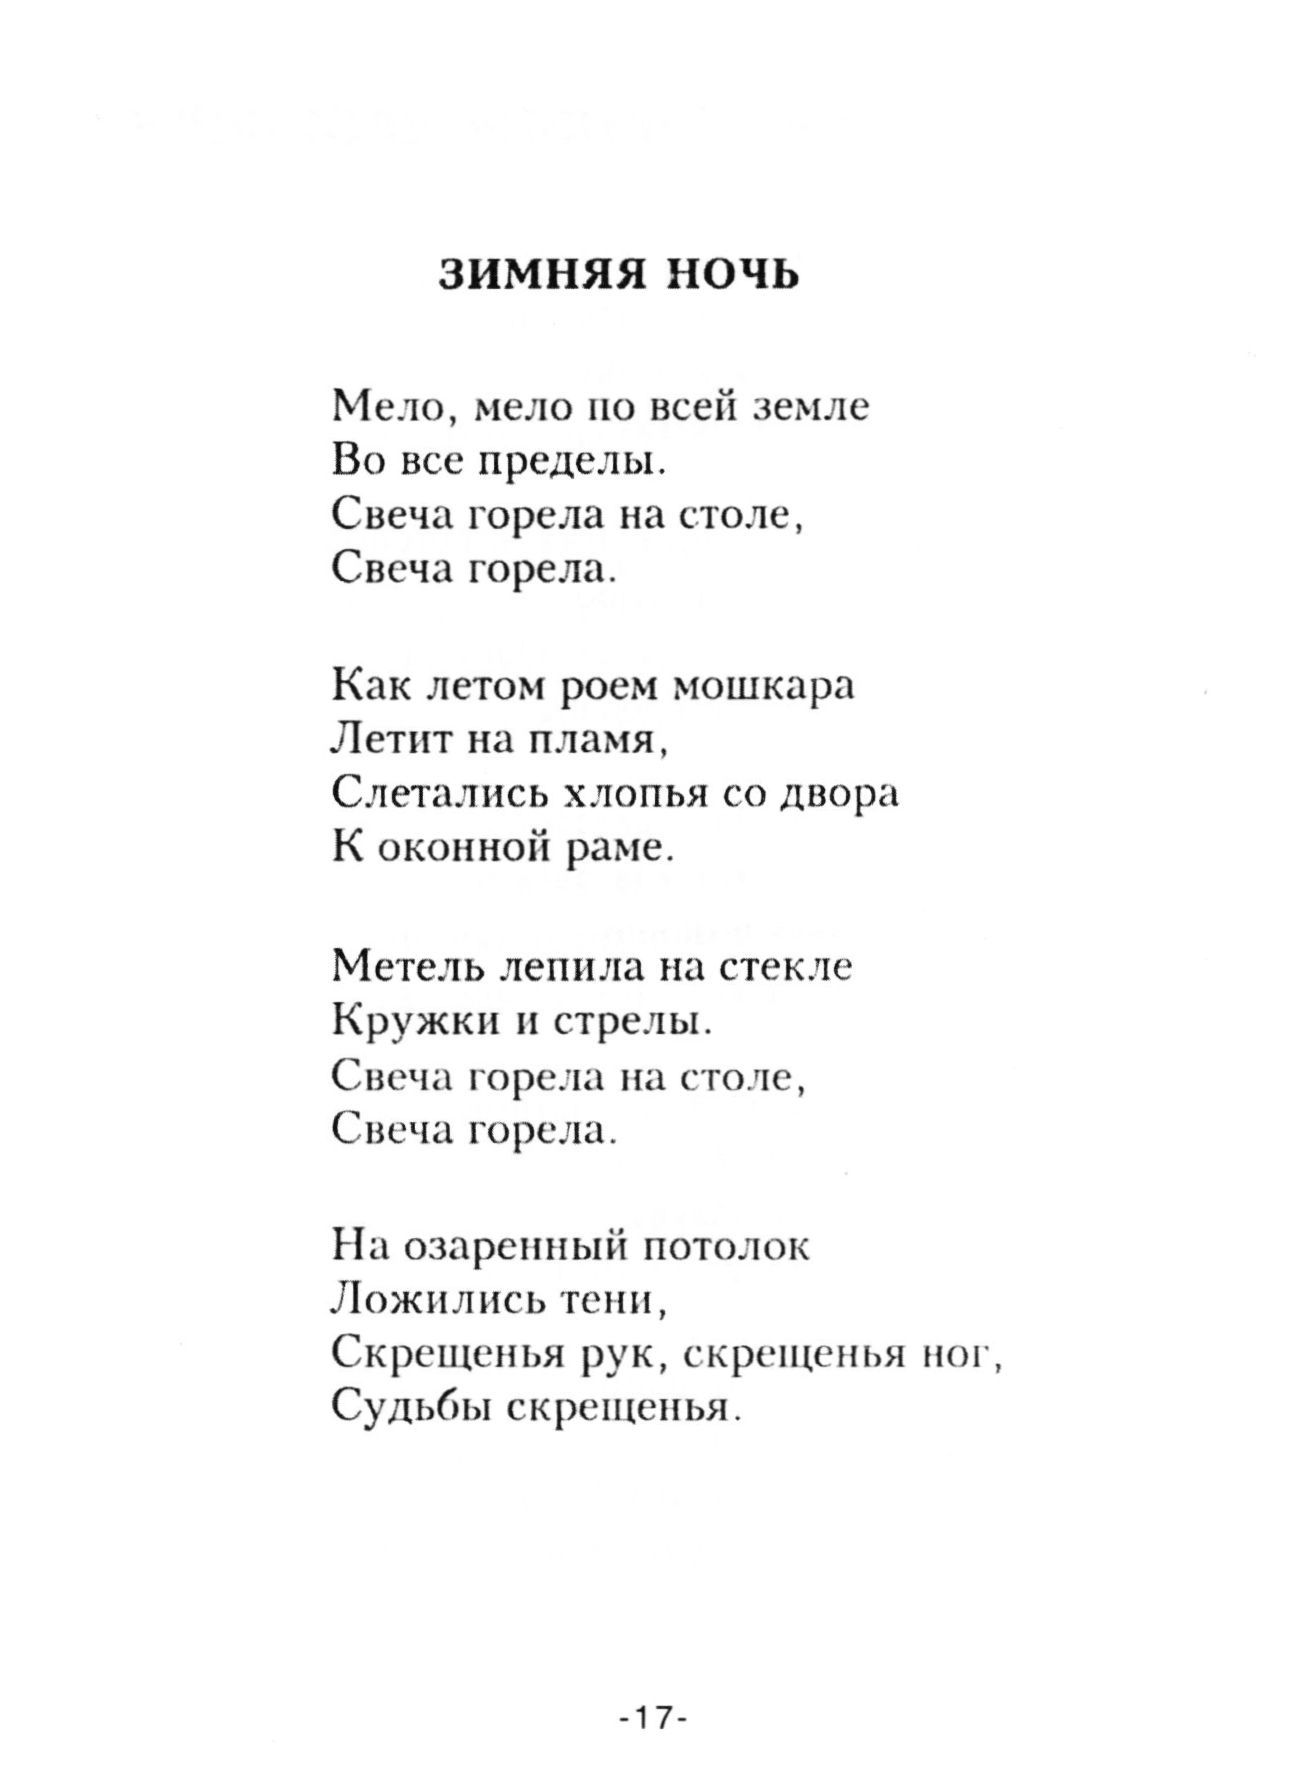 Стихотворение Бориса Леонидовича Пастернака